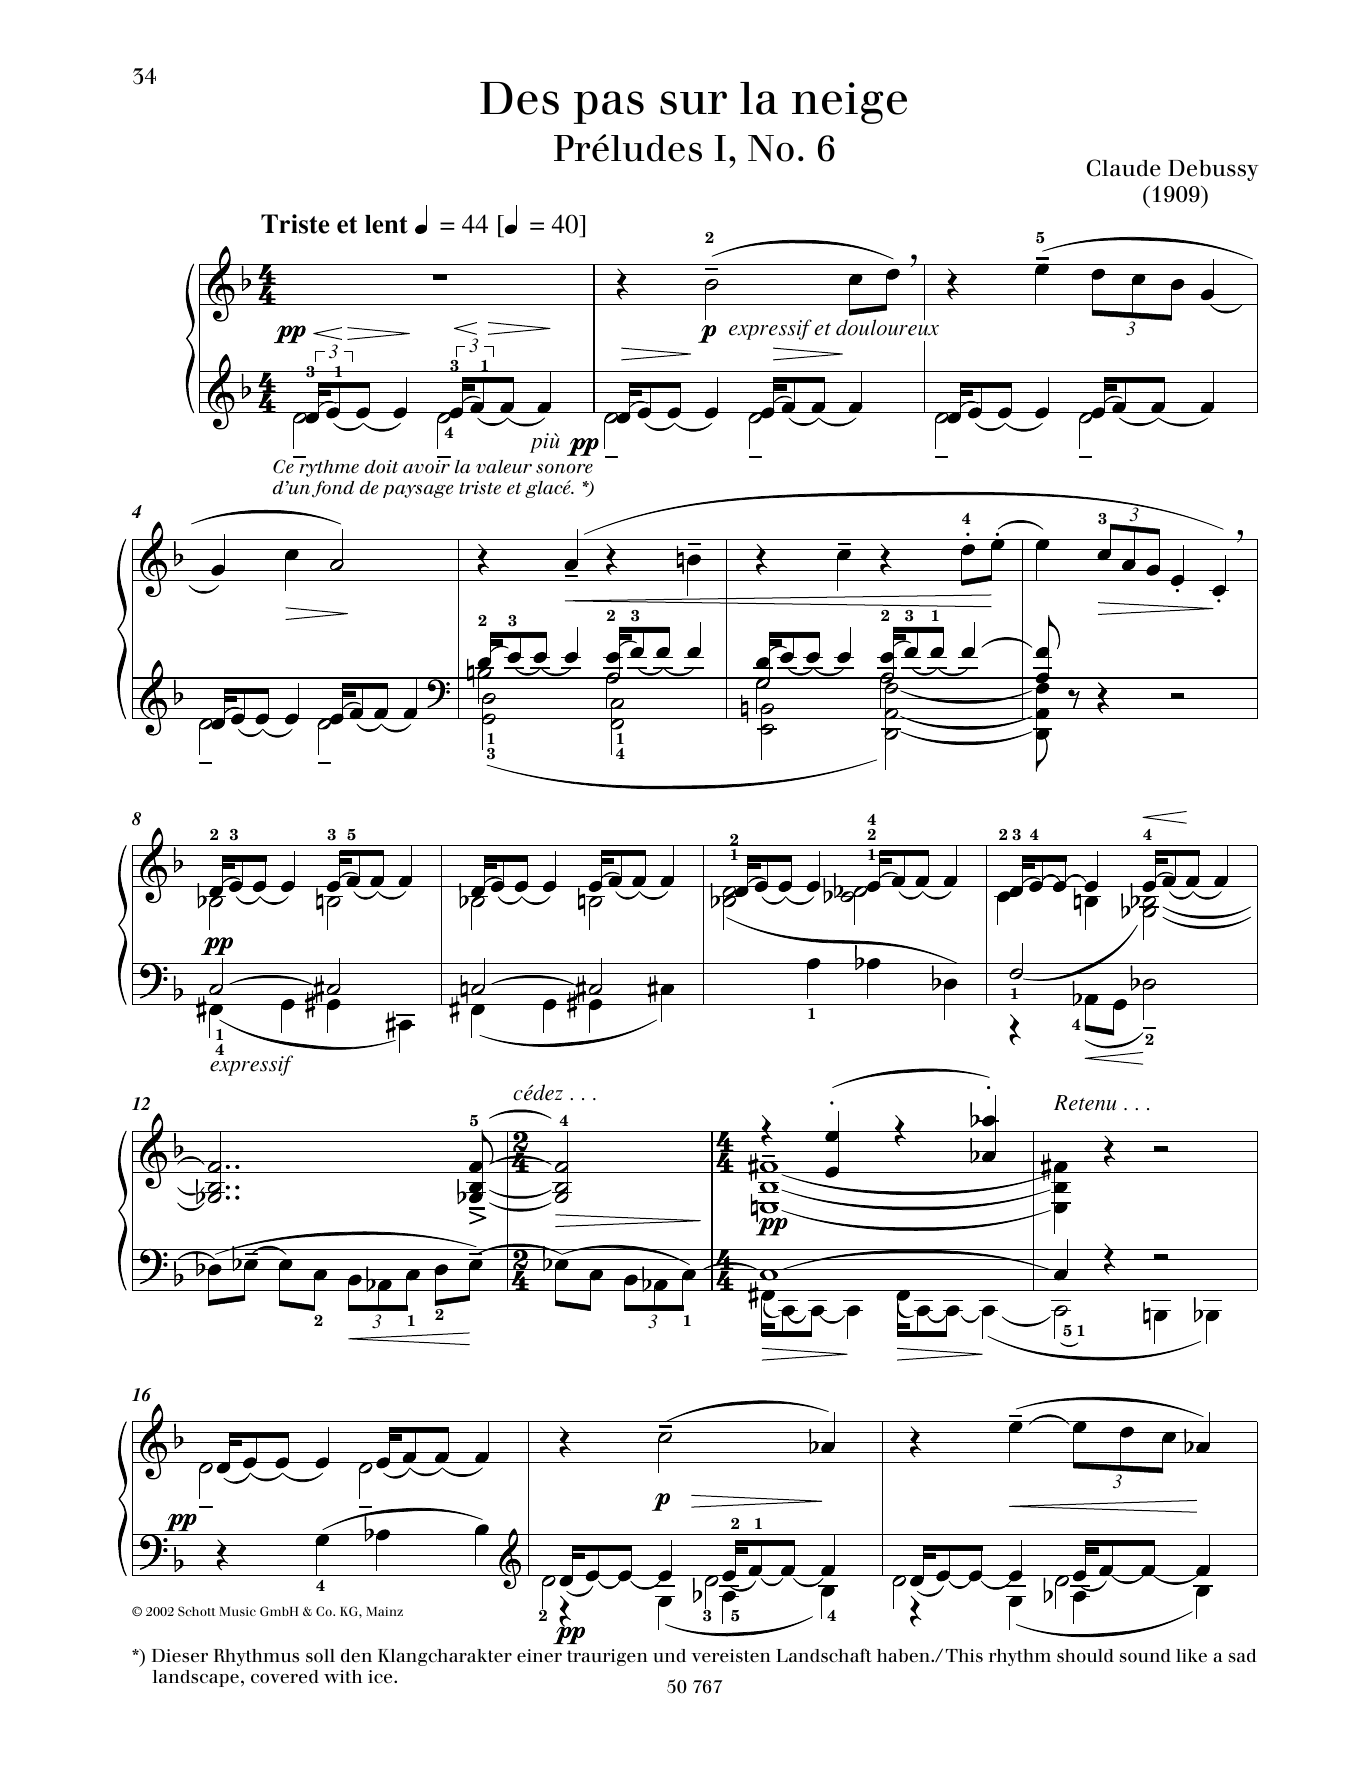 Download Claude Debussy Des pas sur la neige Sheet Music